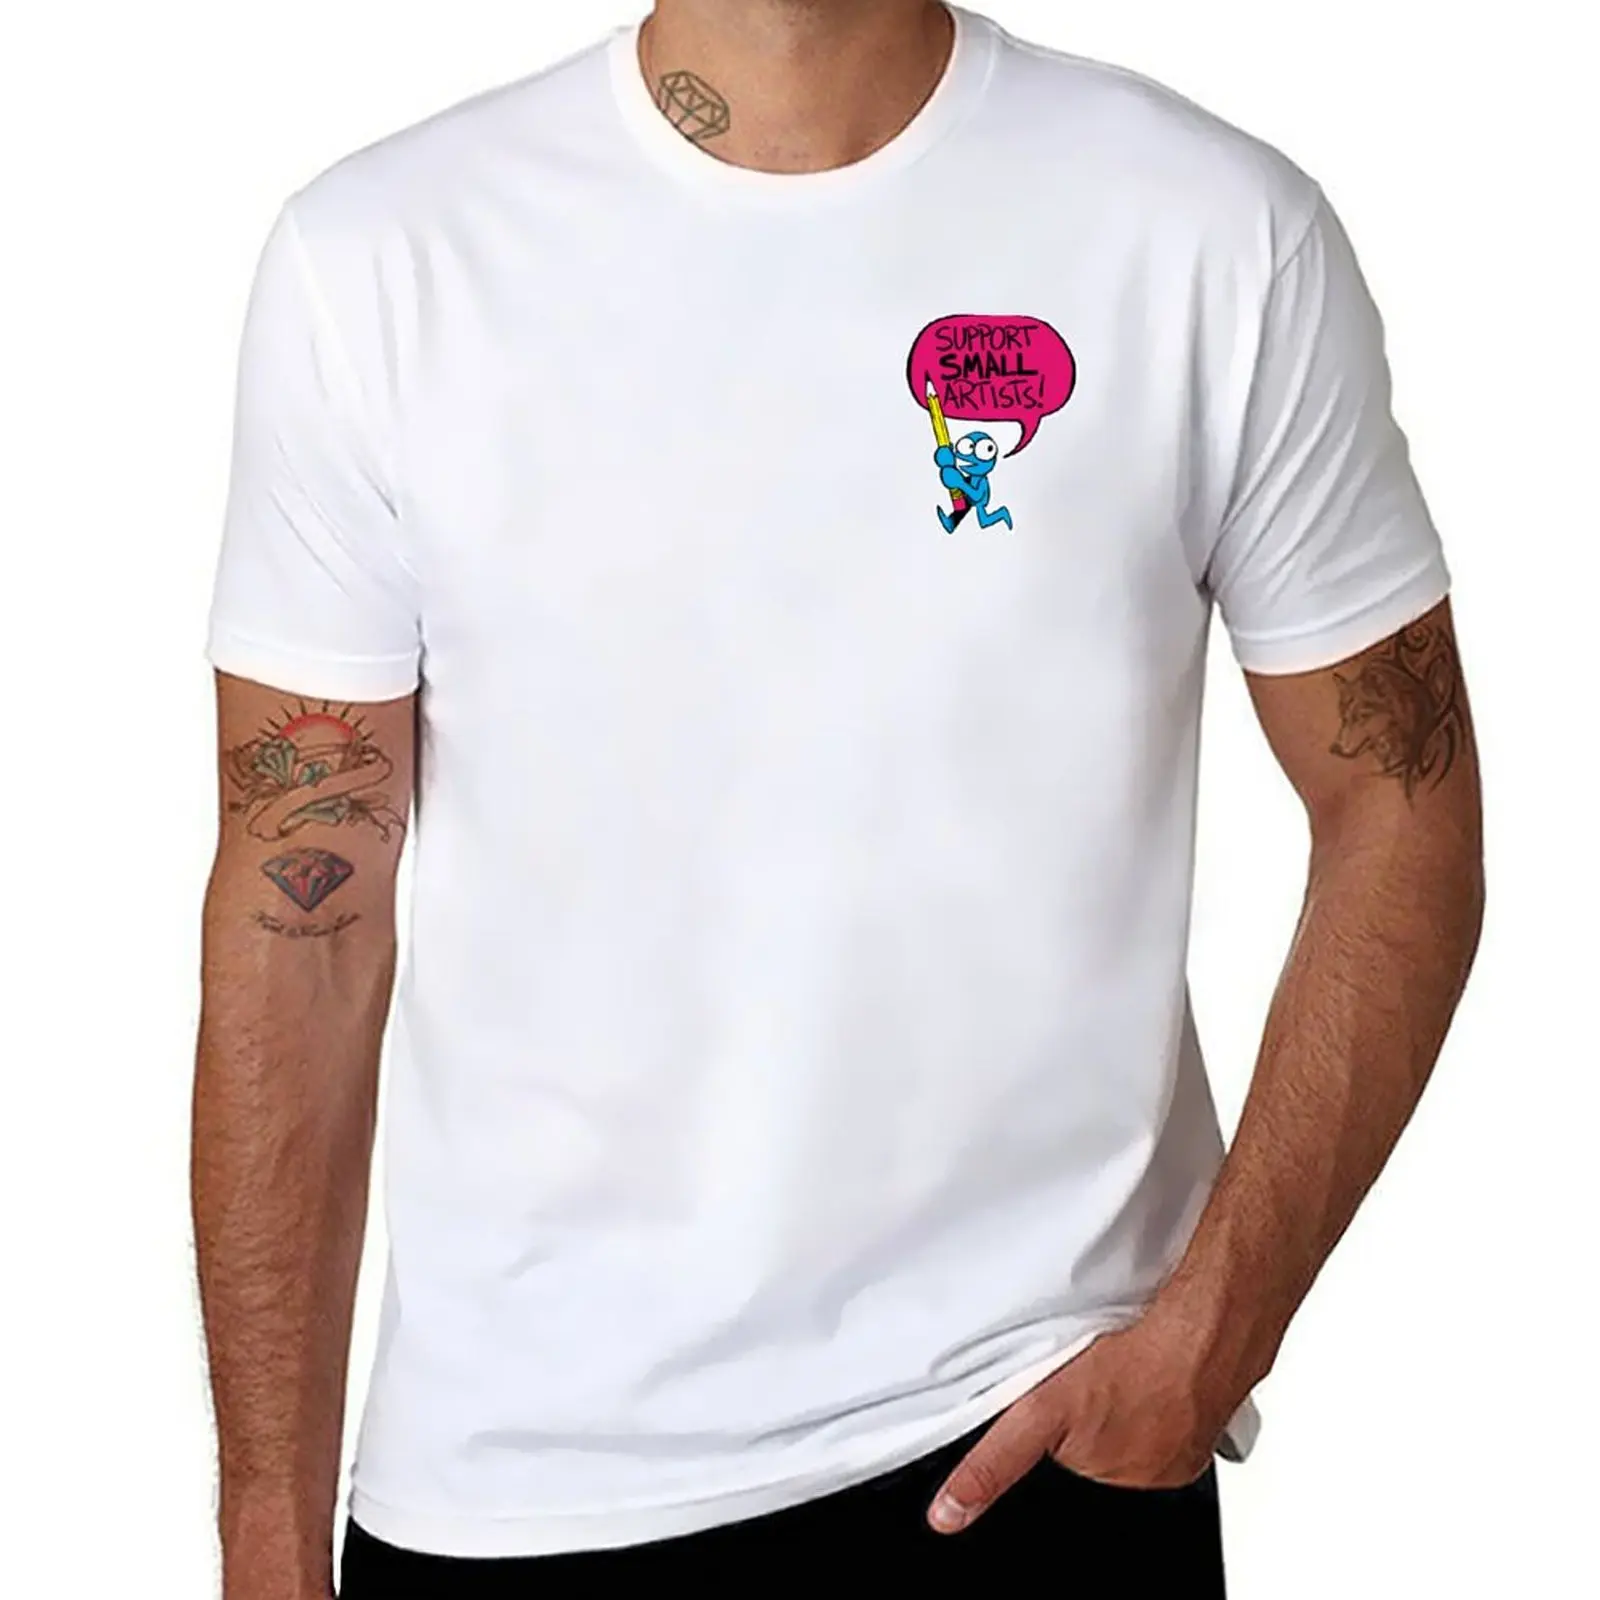 Новая поддержка маленьких художников! (миниатюрная версия) Мужская футболка, мужская одежда большого размера, футболка большого размера Изображение 0